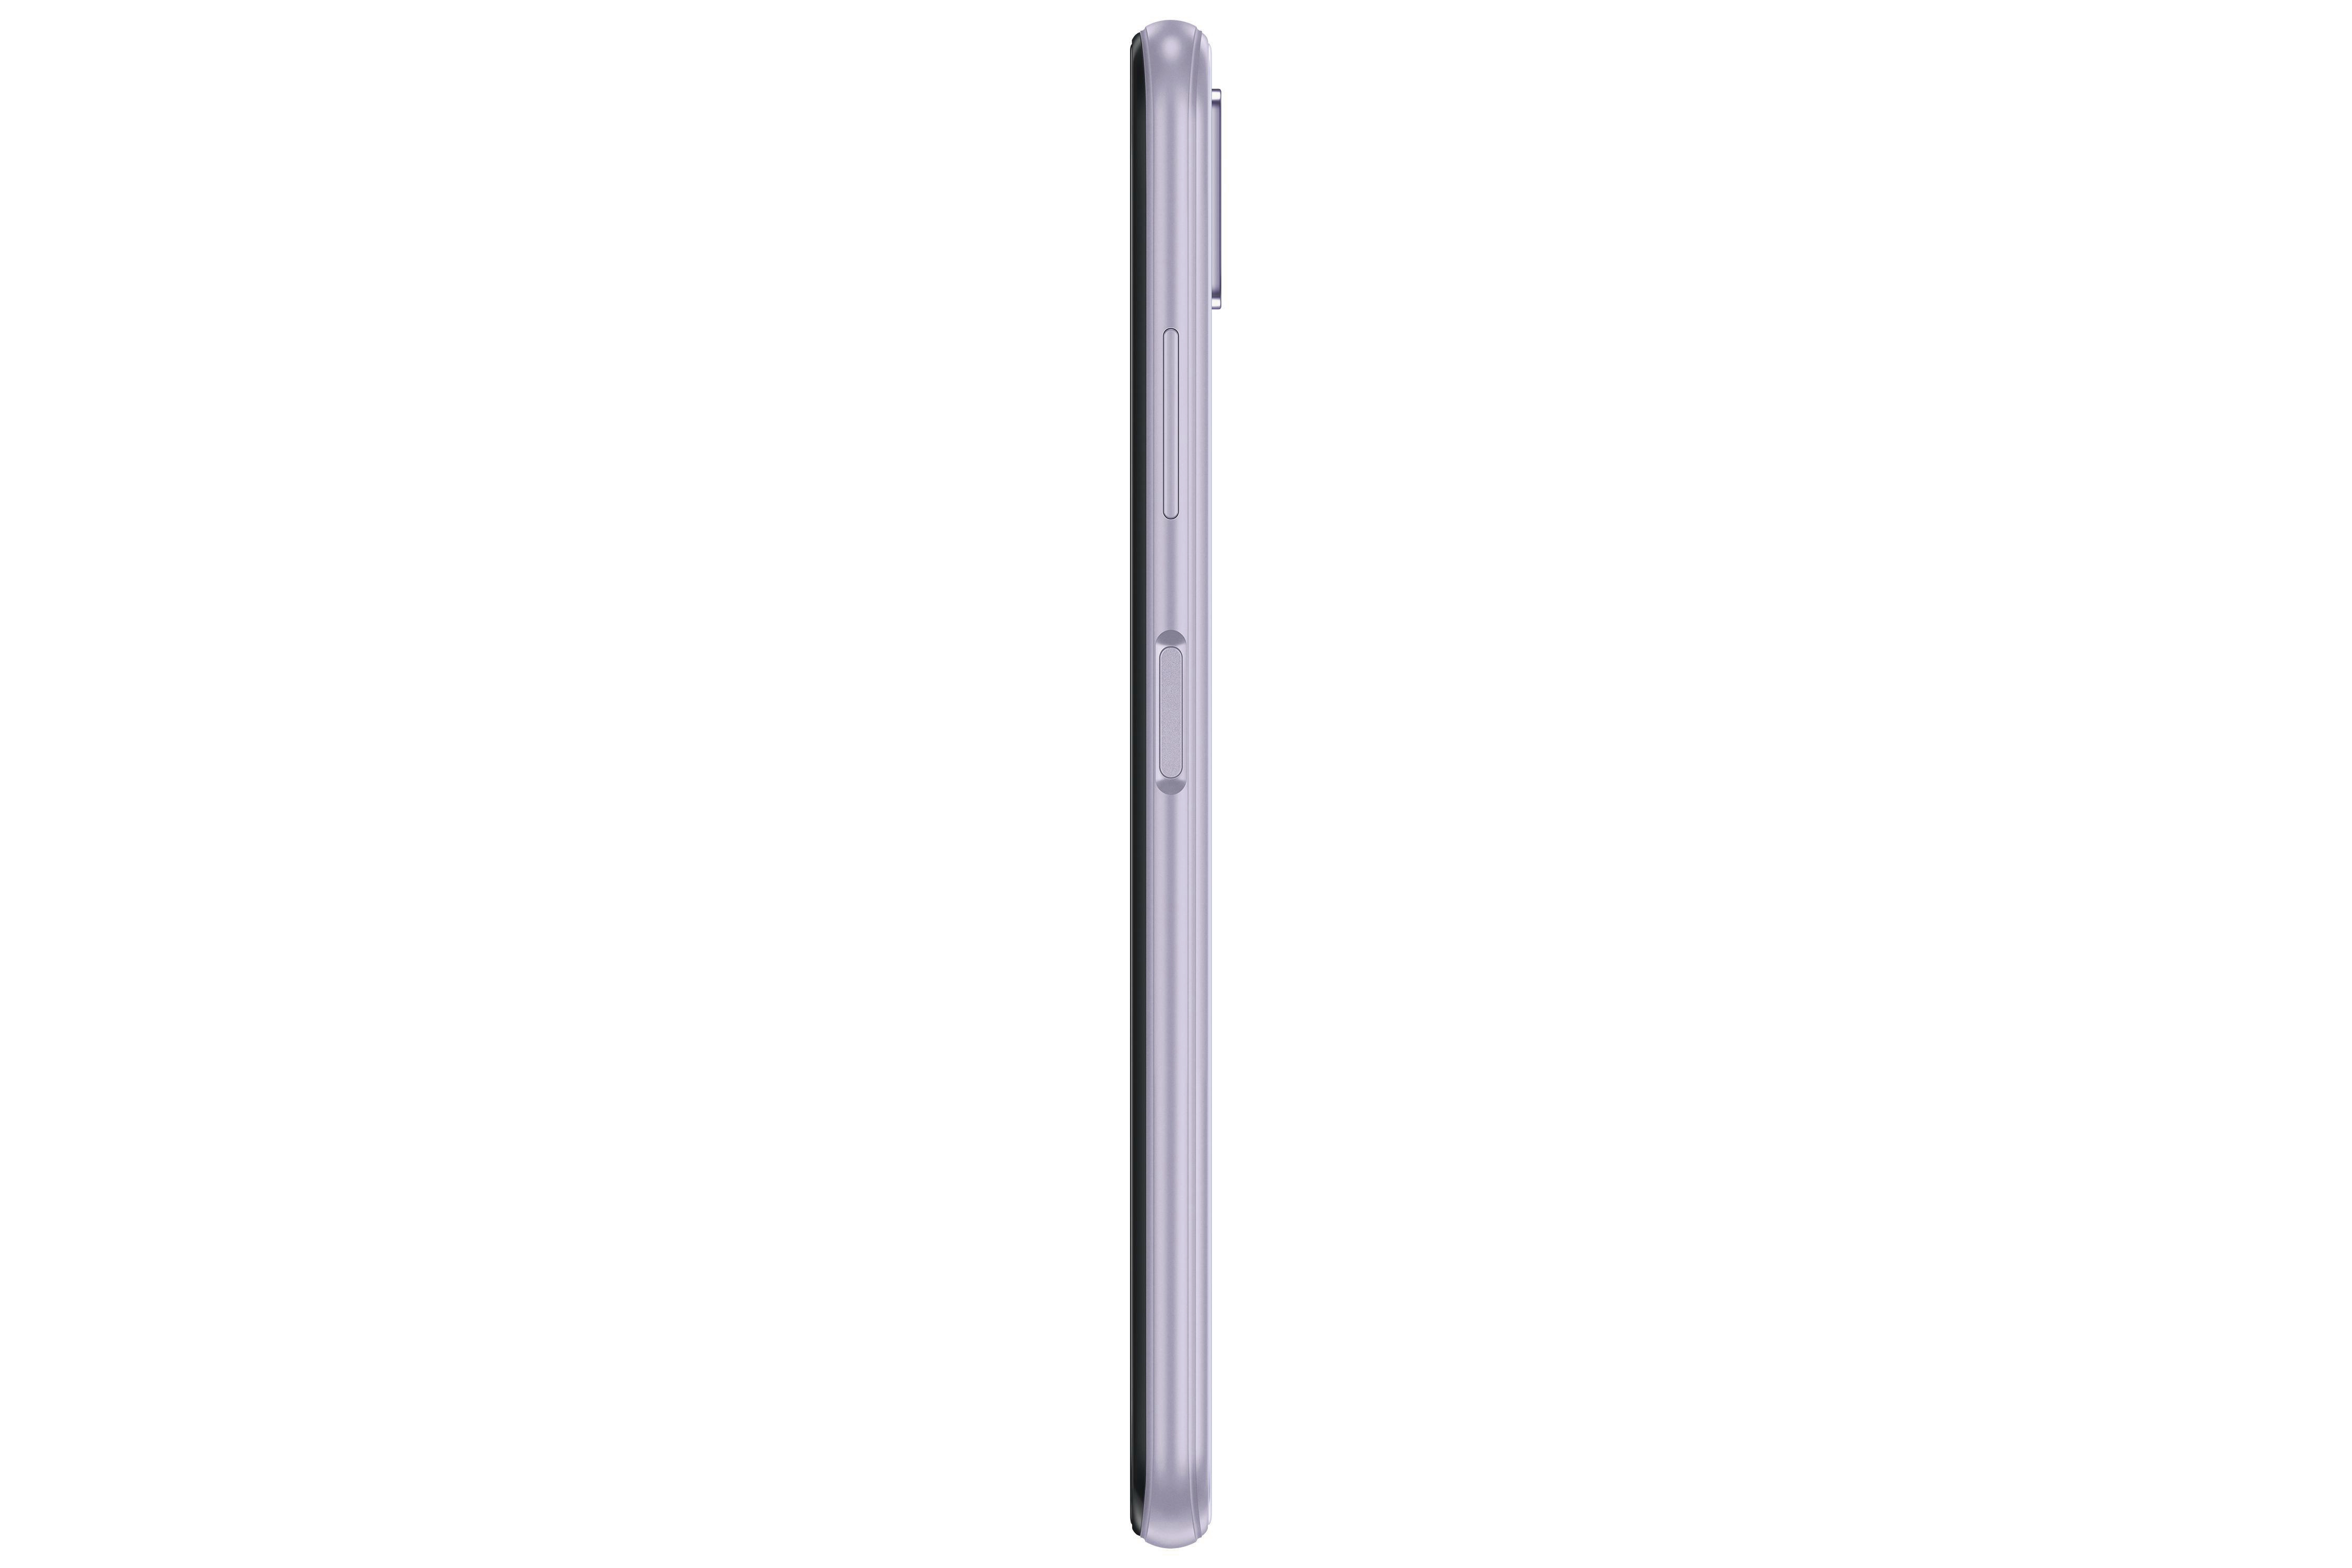 Dual 5G Violet SAMSUNG GB SIM A22 Galaxy 128